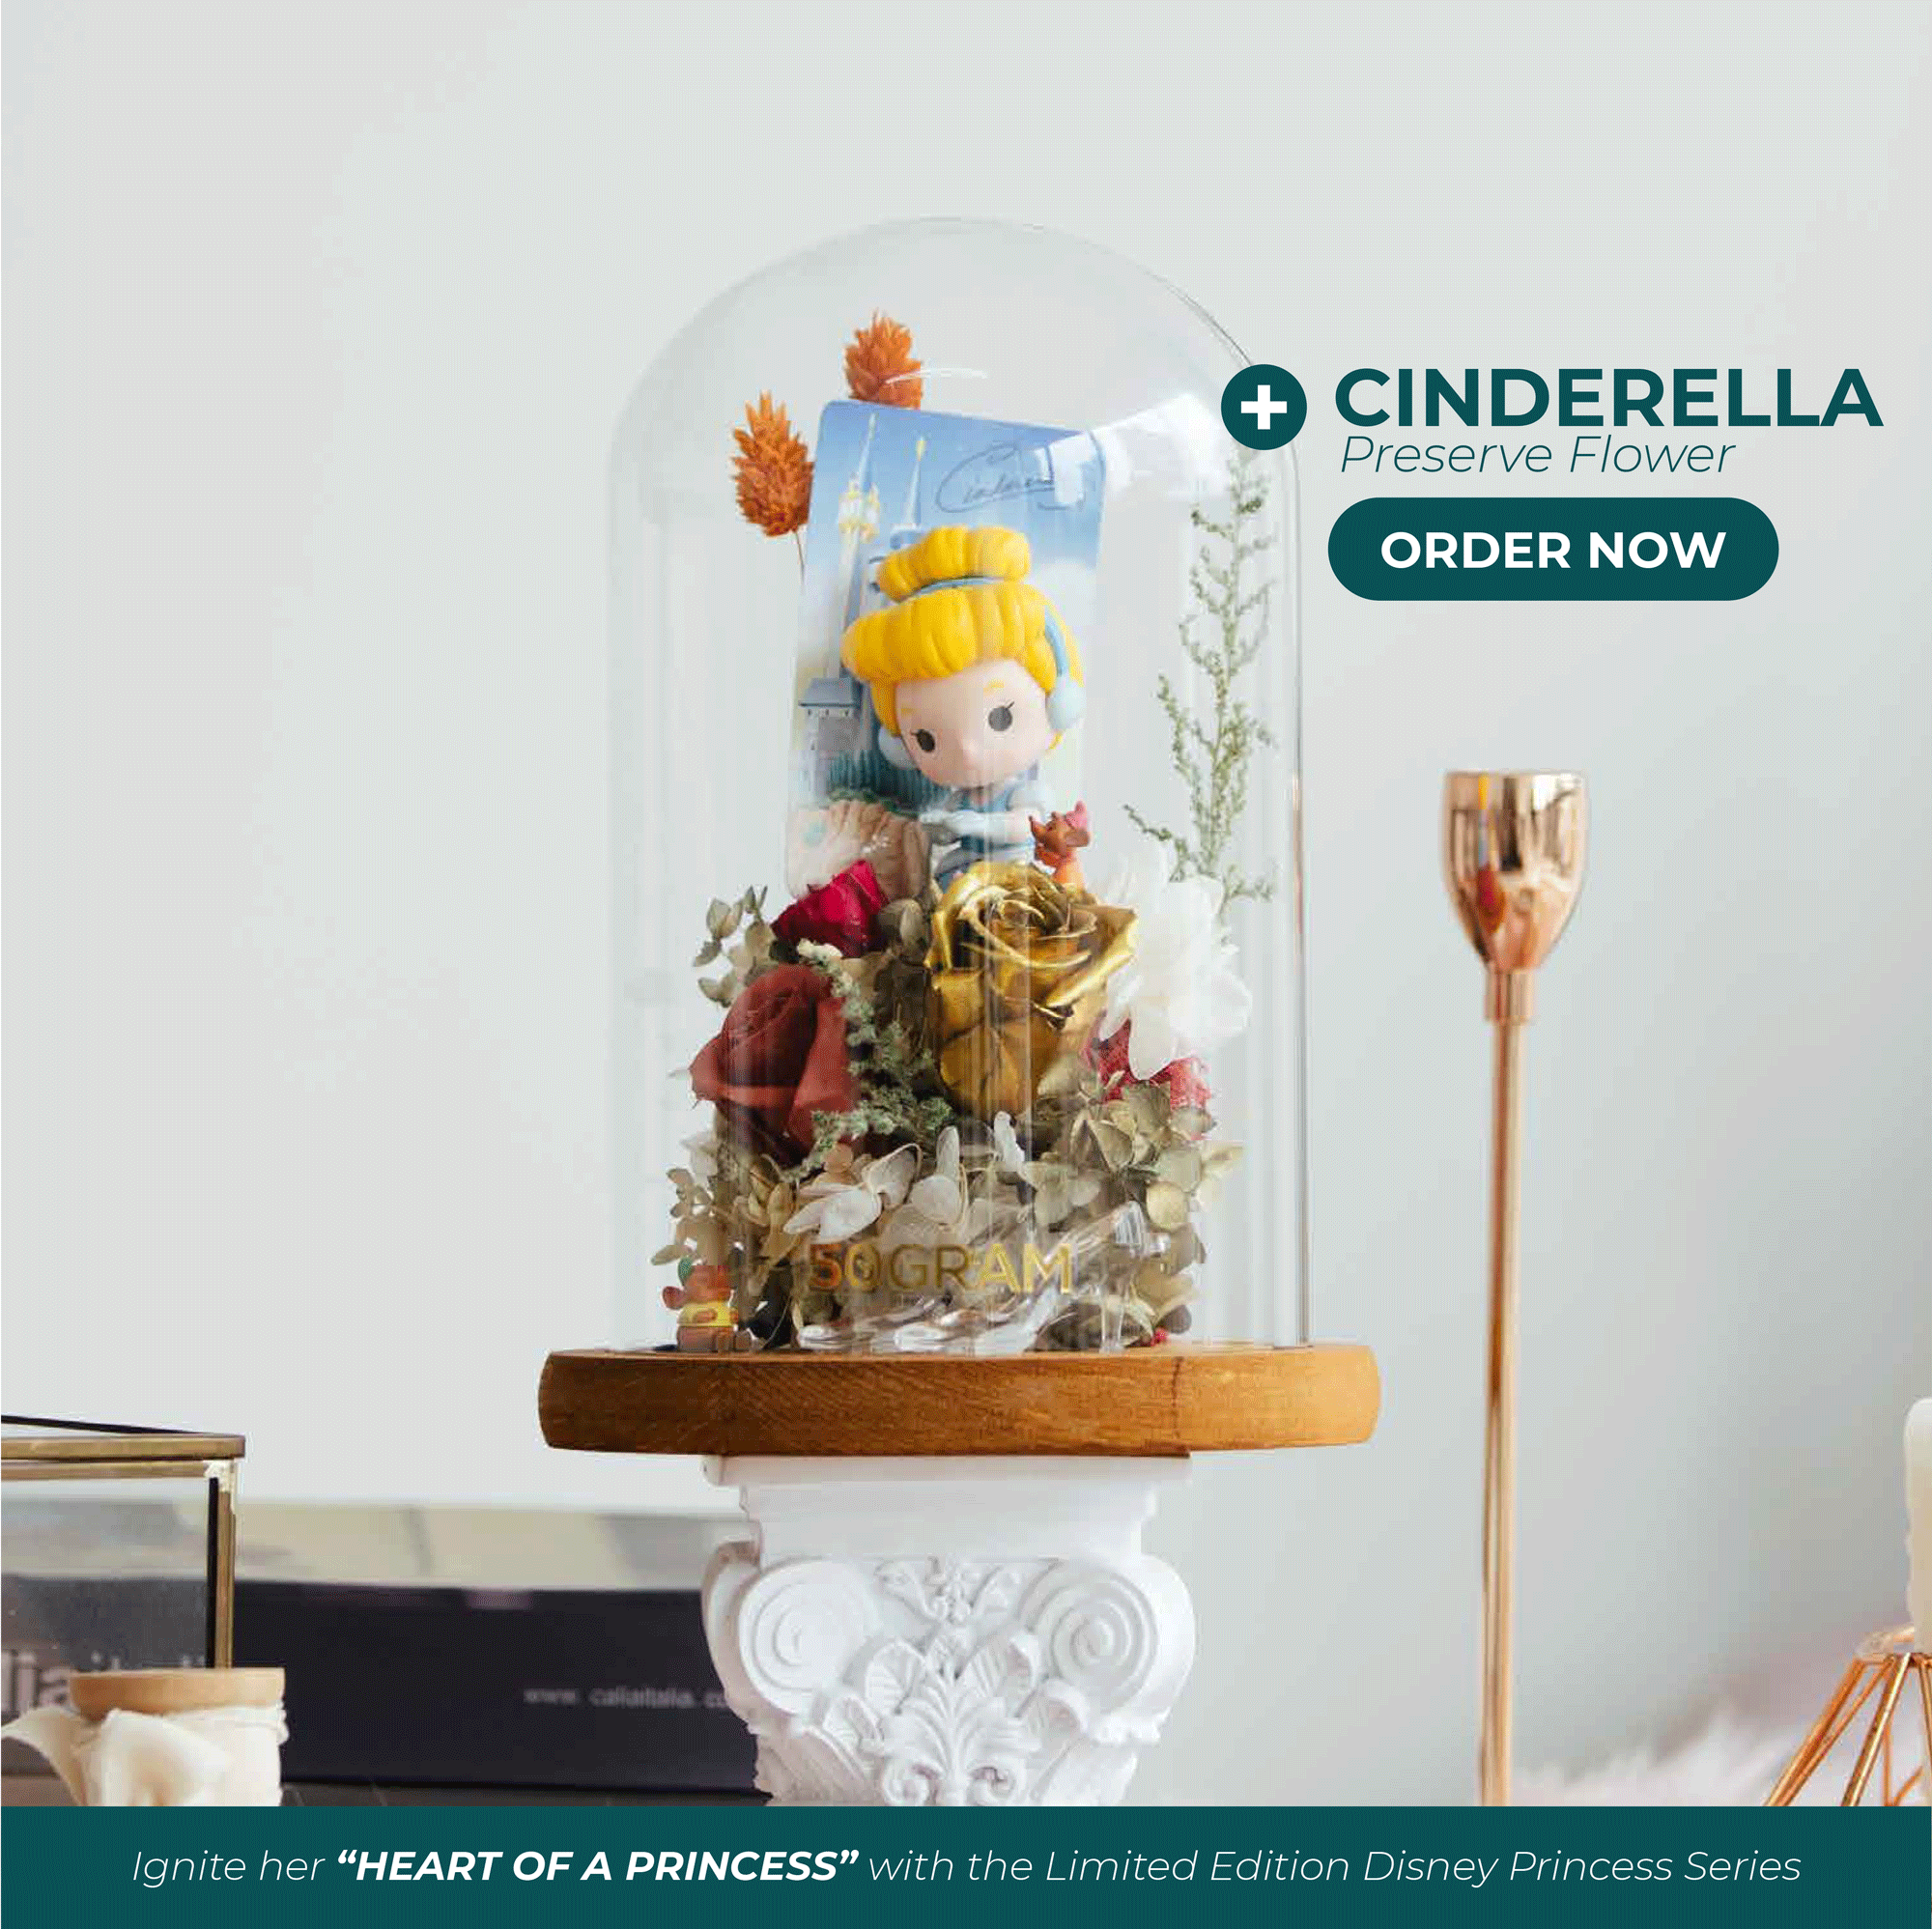 Princess preserve cinderrella